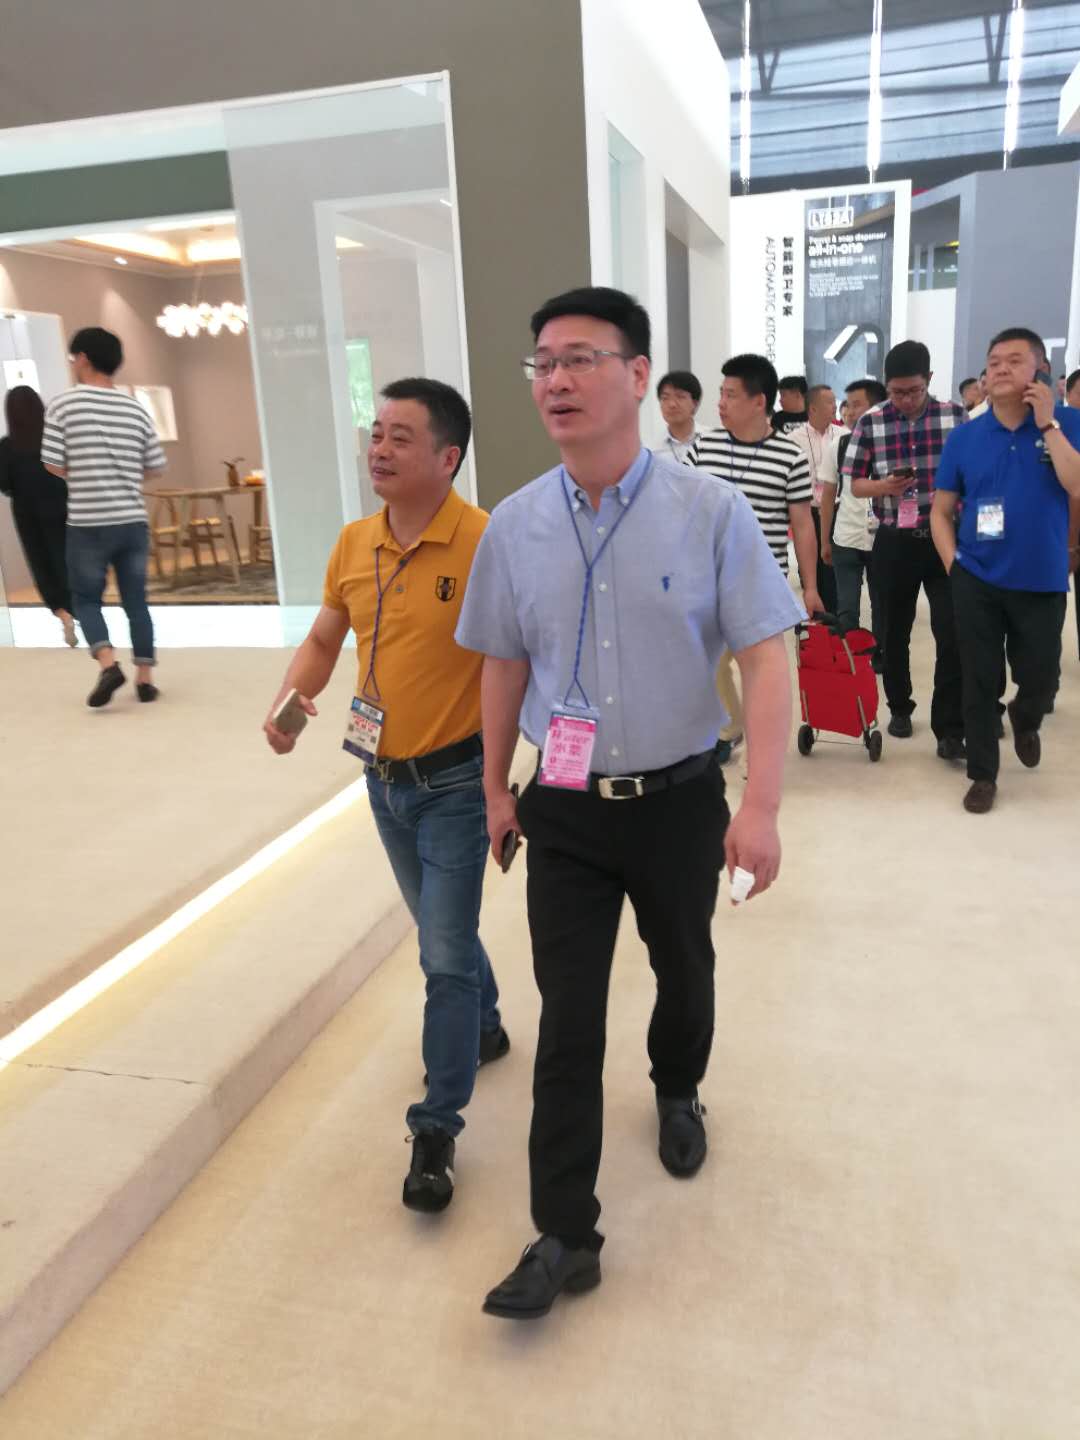 玉环副市长蔡木贵一行7人参观中国上海国际厨房卫浴博览会